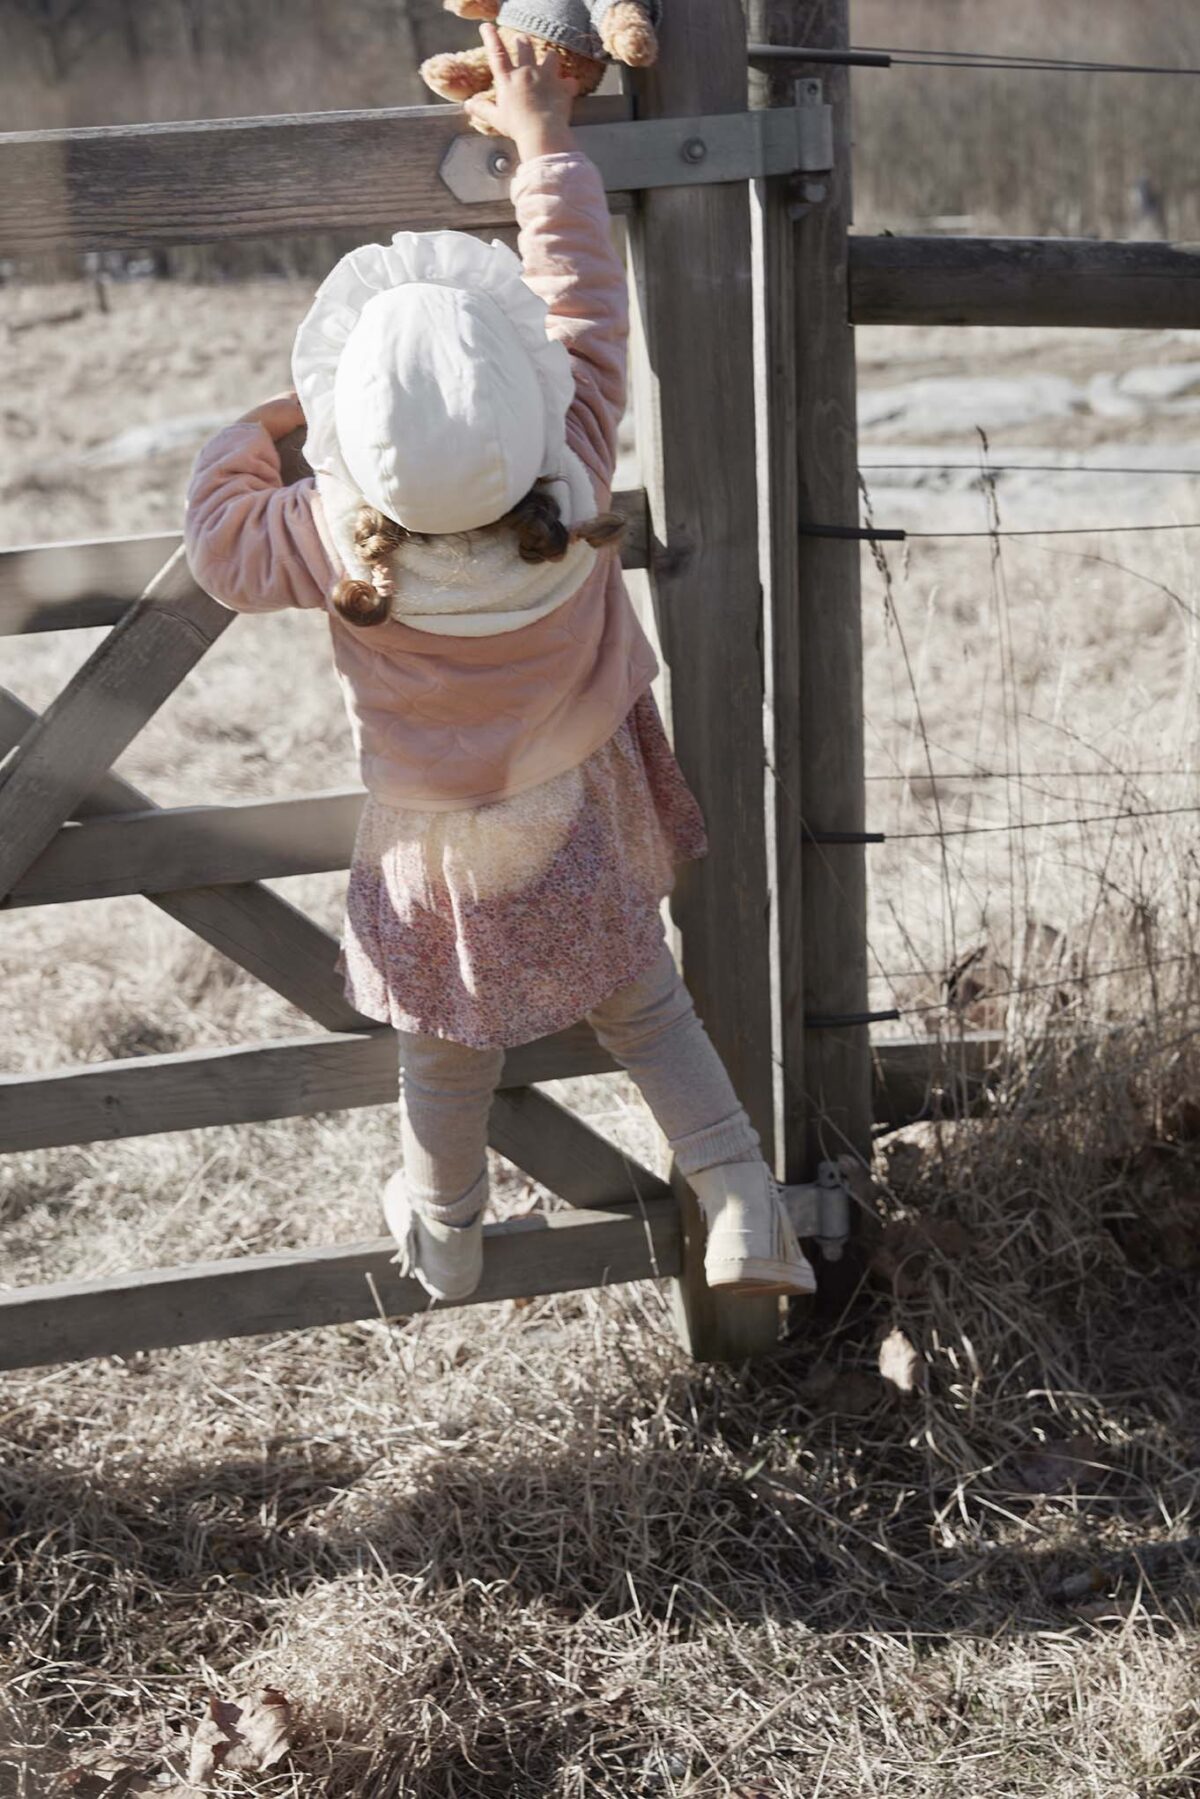 Elodie Details - Winter Bonnet - Creamy White - 6-12 Months - Ubrania I Akcesoria &Gt; Ubrania &Gt; Ubrania Dla Dzieci I Niemowląt &Gt; Ubrania Wierzchnie Dla Dzieci I Niemowląt